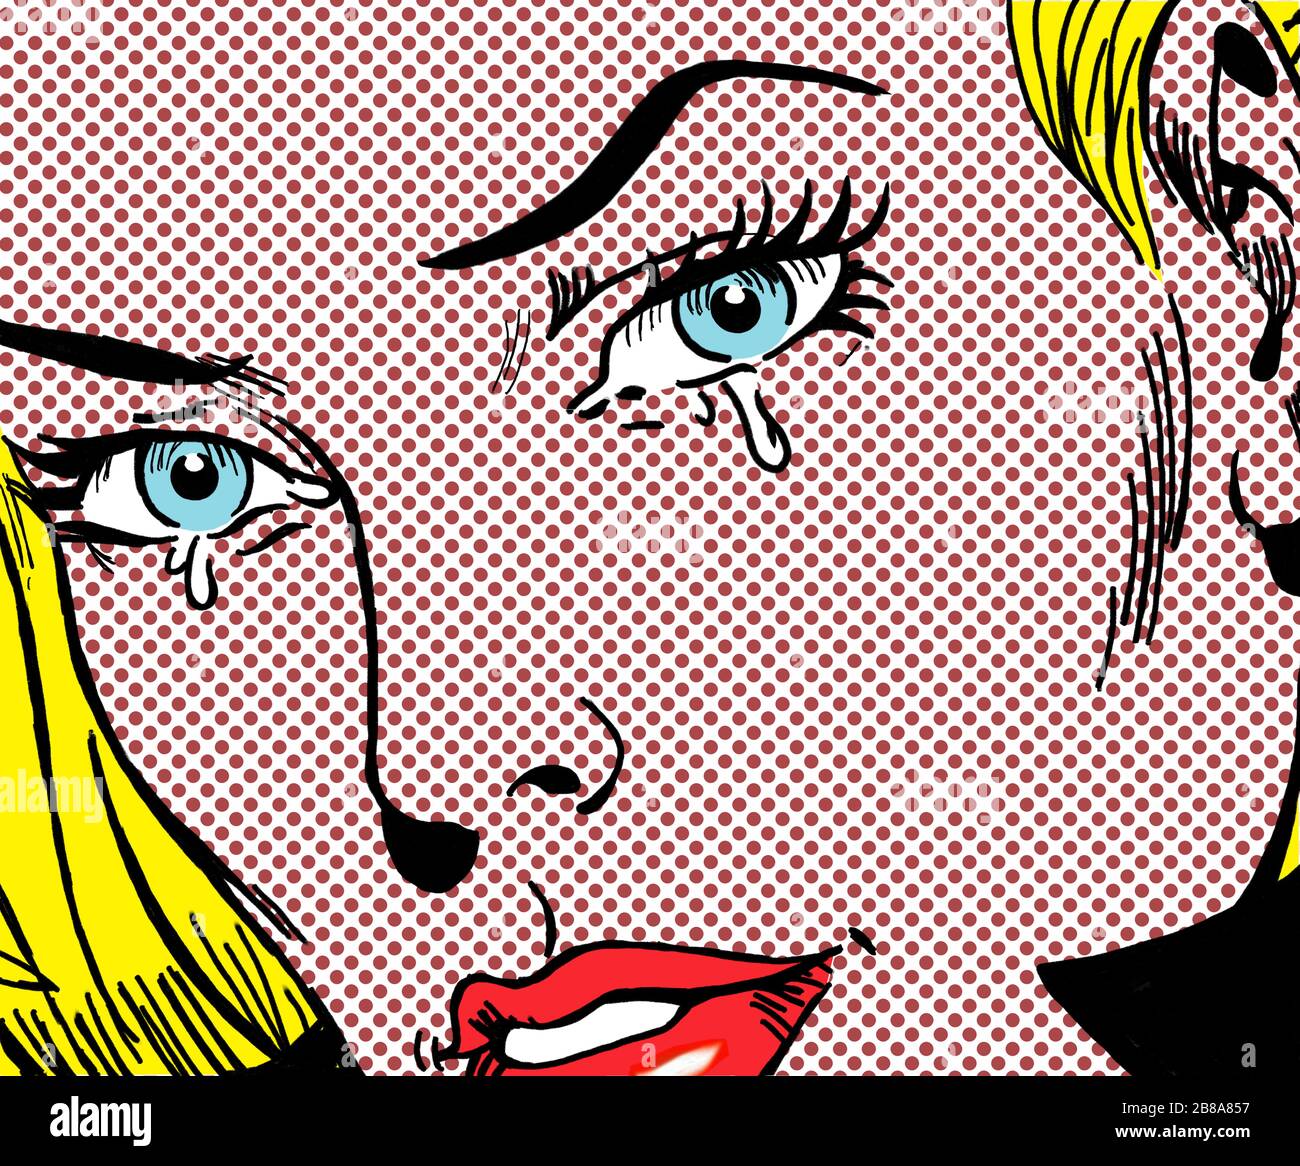 Schreiende Frau im Stil der 60er Jahre Comics, Pop Art Stockfotografie -  Alamy